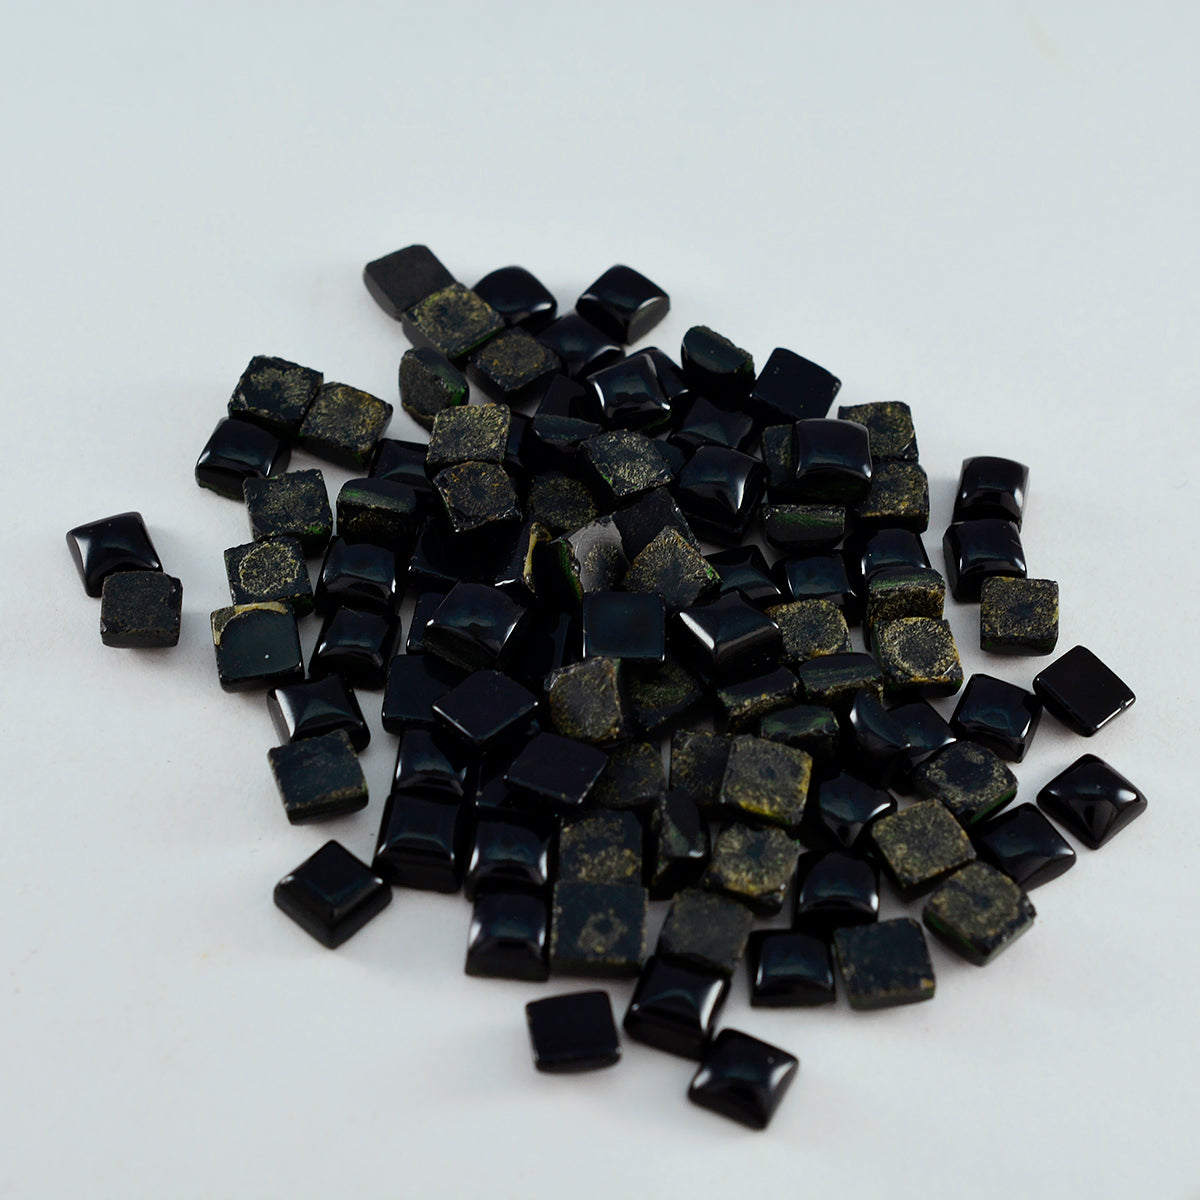 Riyogems 1PC Black Onyx Cabochon 4x4 mm Square Shape pretty Quality Gems